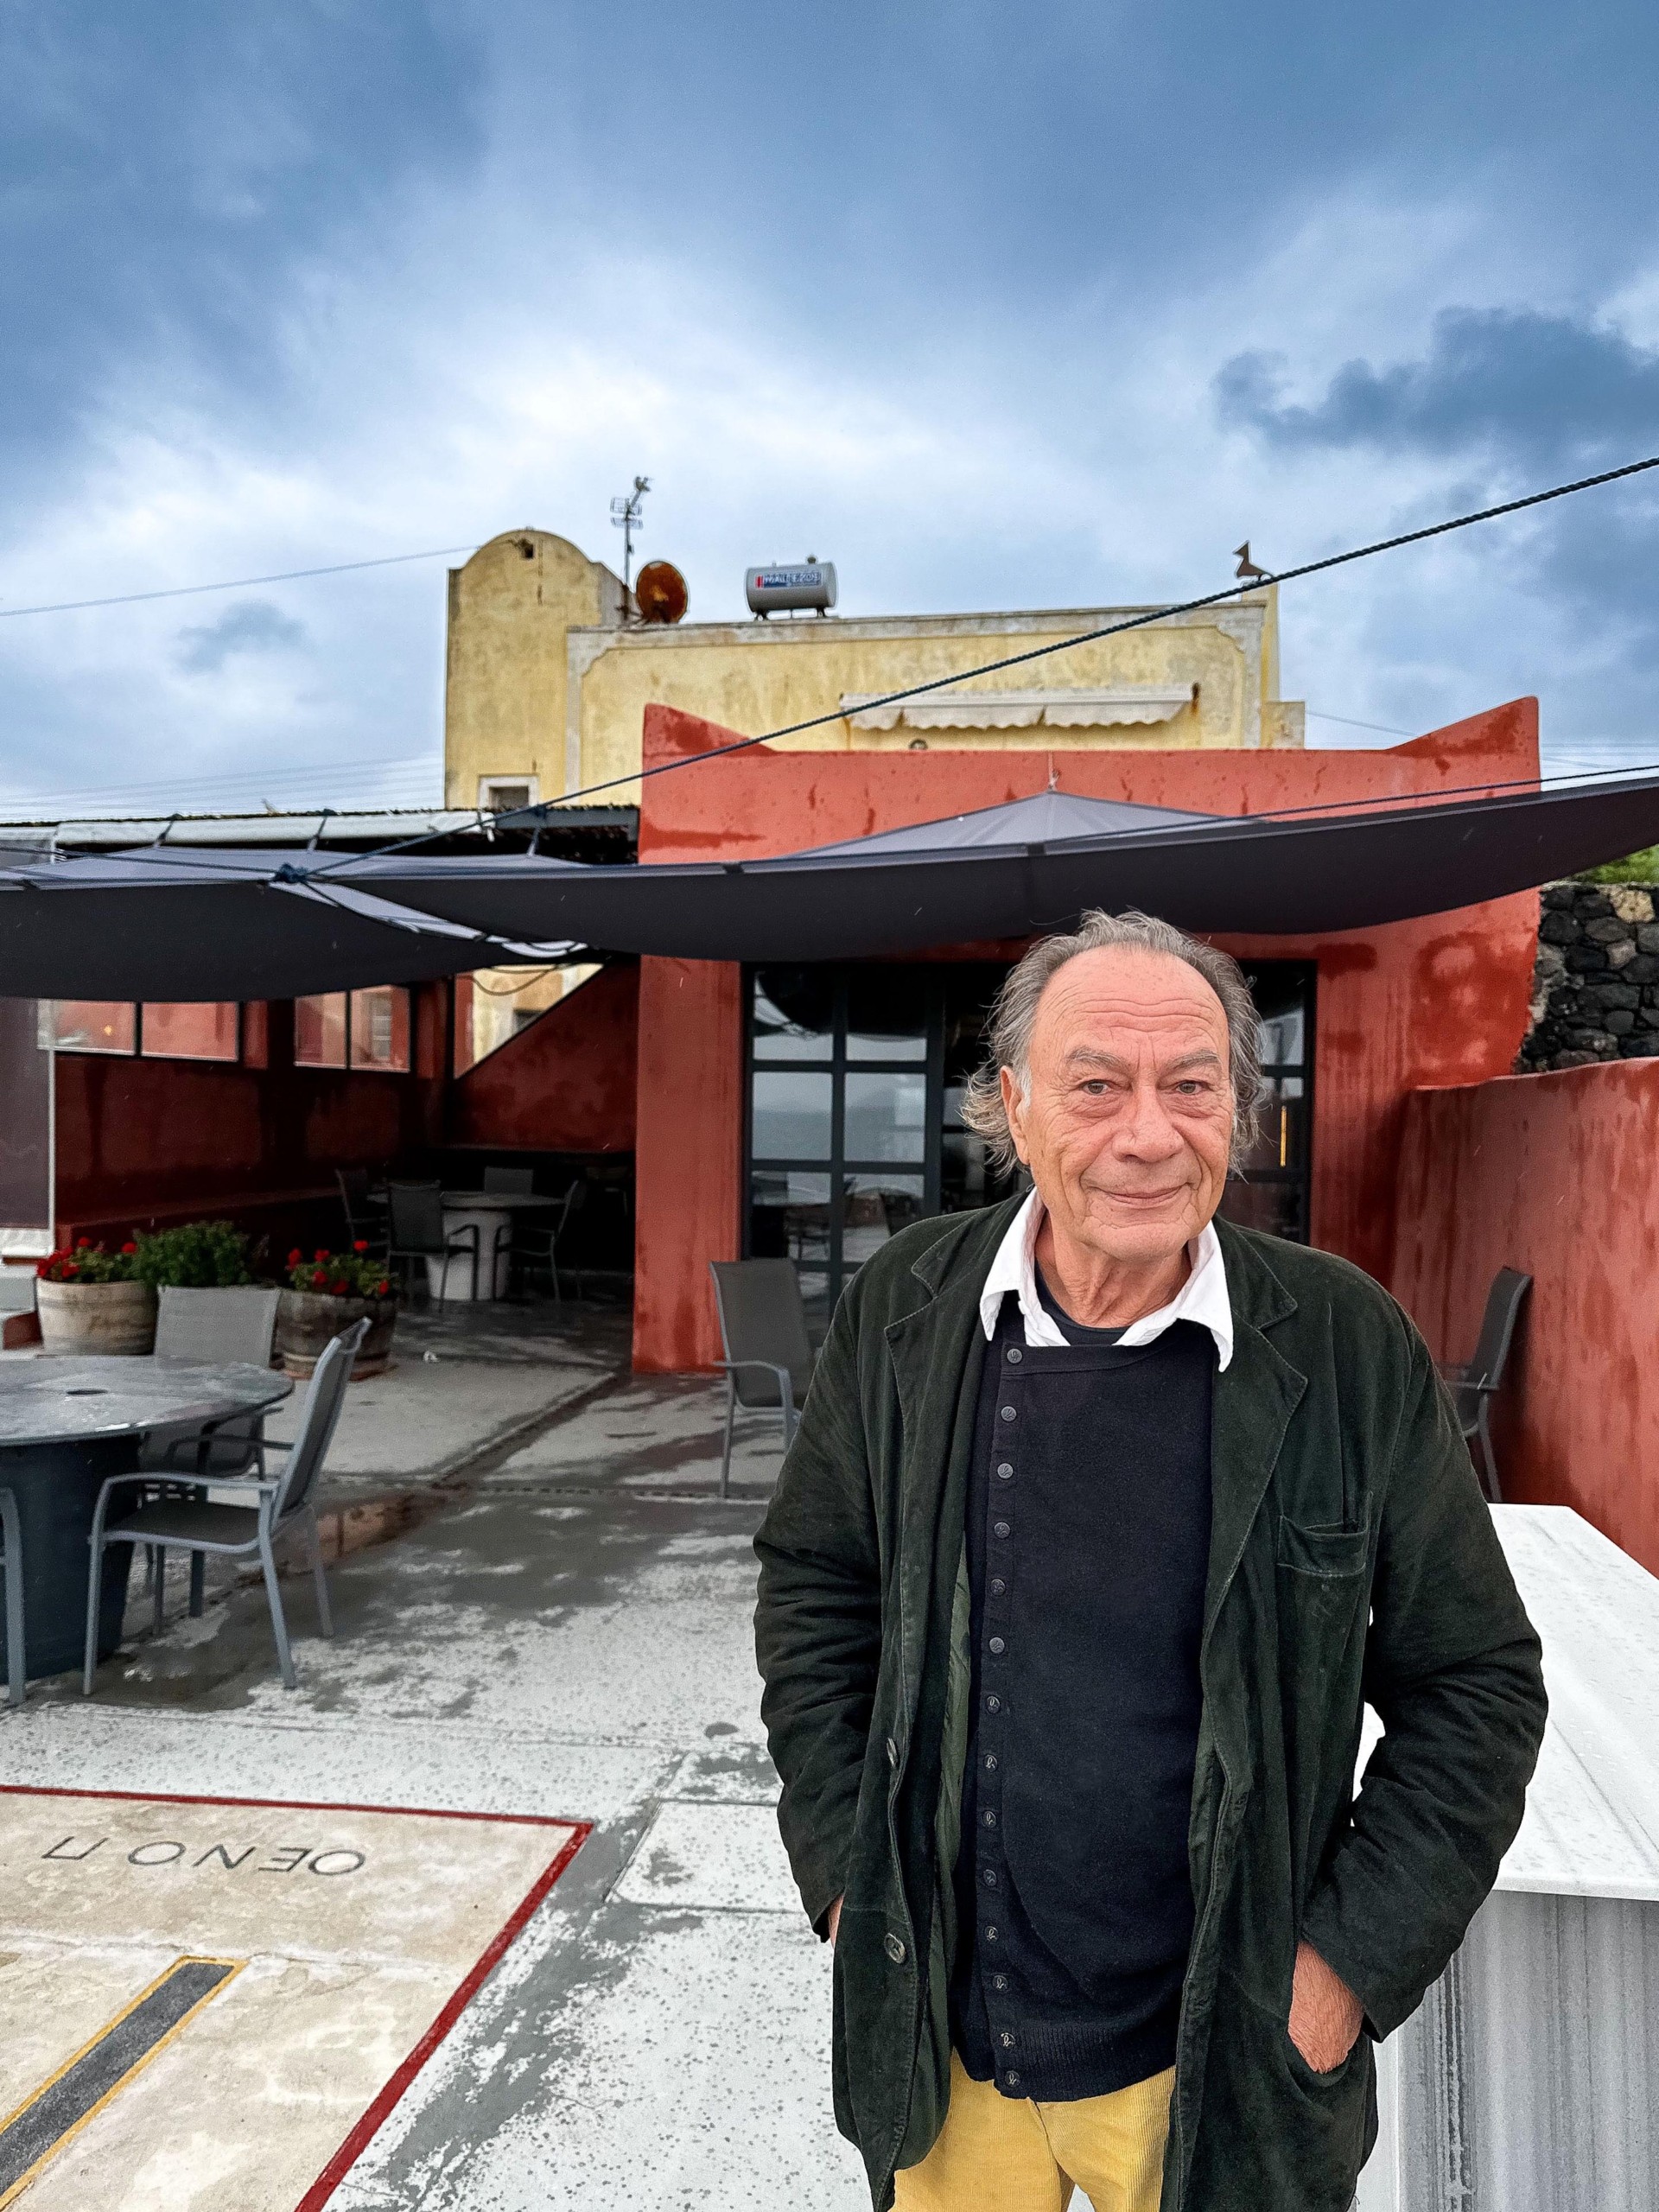 Σαντορίνη: Το νέο οινοποιείο του Πάρι Σιγάλα αλλάζει την ιστορία του Ασύρτικου όπως το ξέραμε